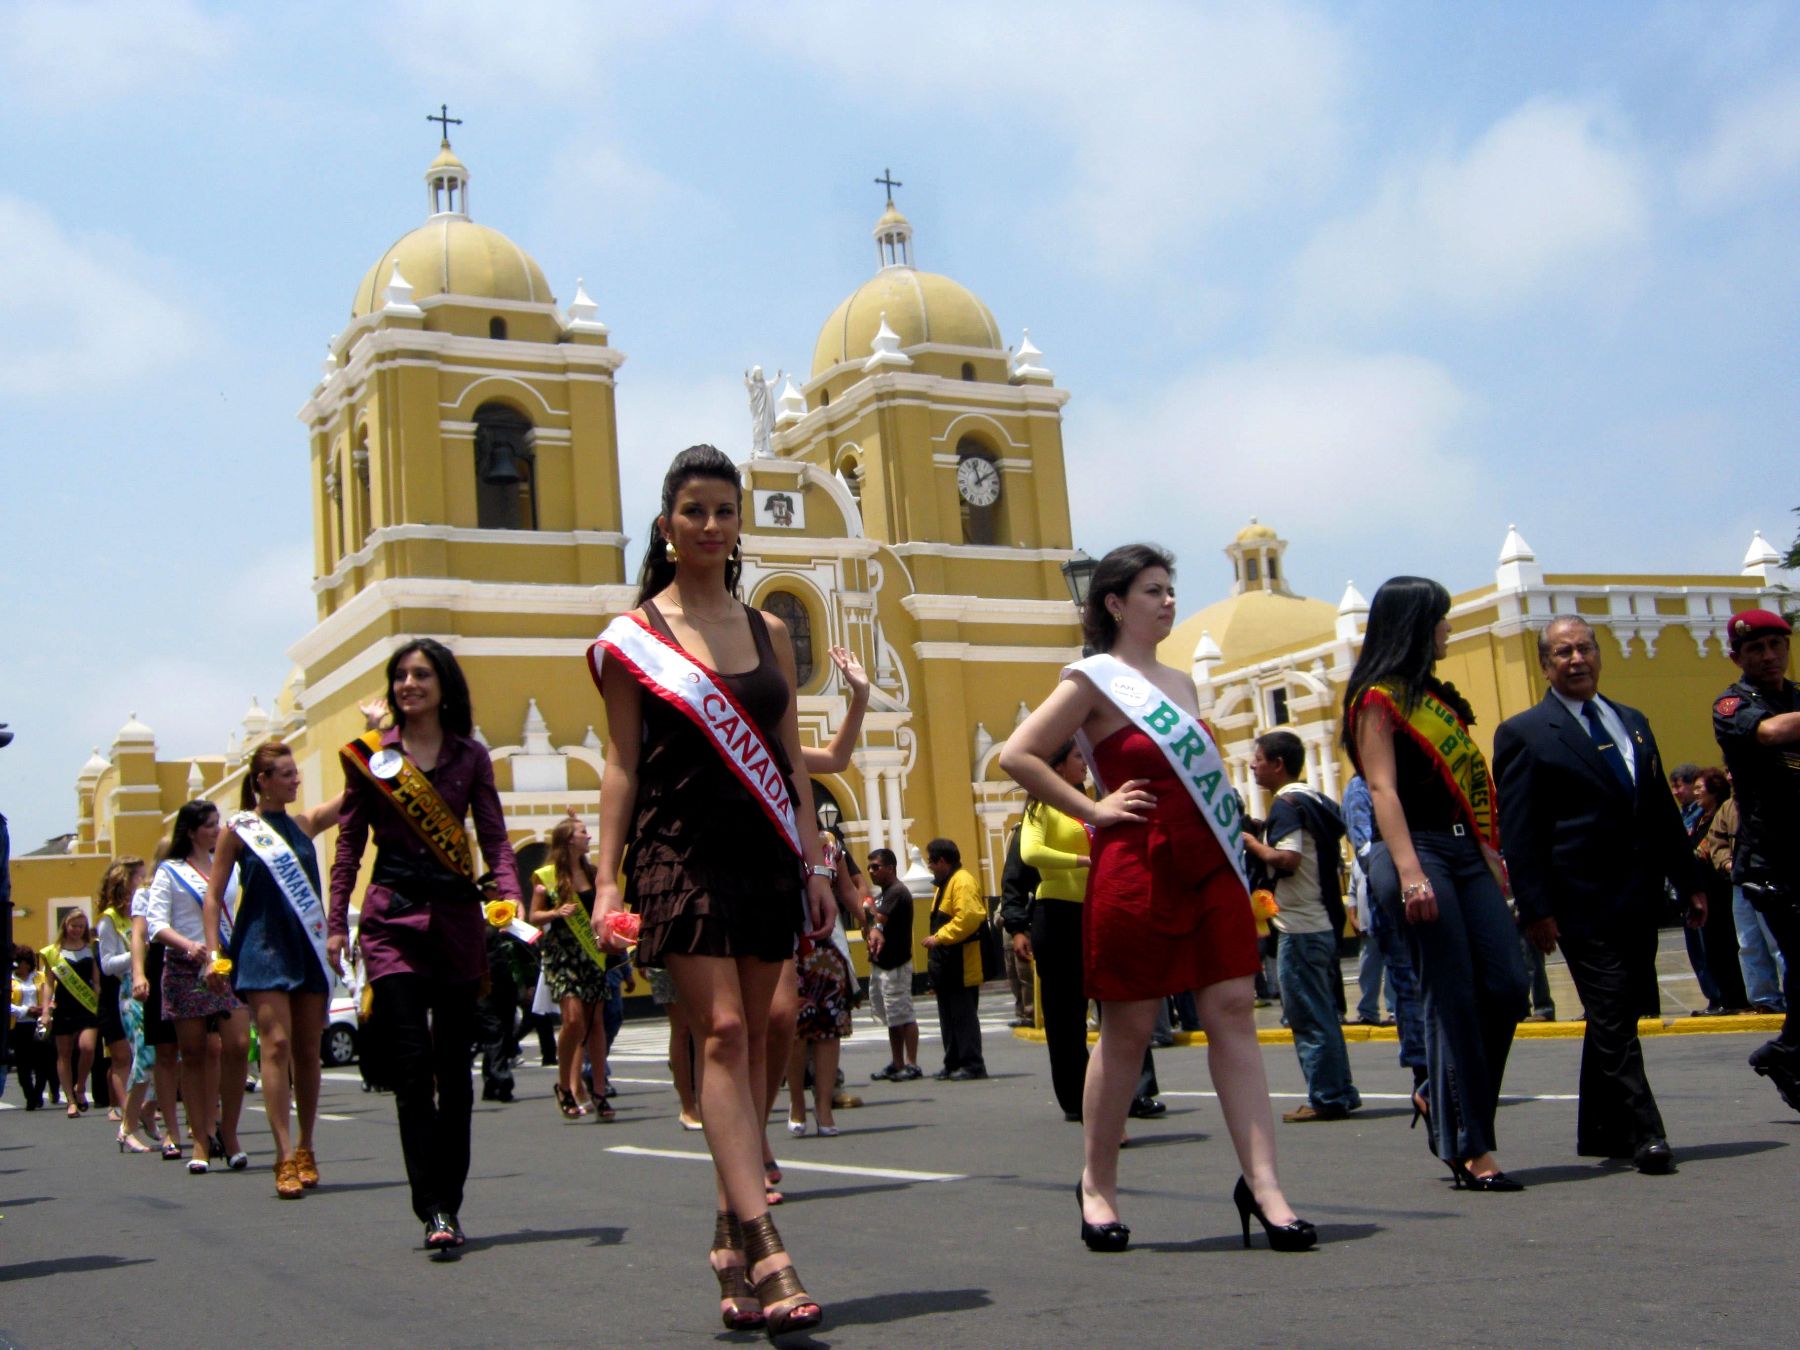 Reinas y bastoneras extranjeras, junto a sus pares peruanas, derrocharon alegría y belleza en su recorrido por el Centro Histórico de Trujillo. Foto: ANDINA / Oscar Paz.